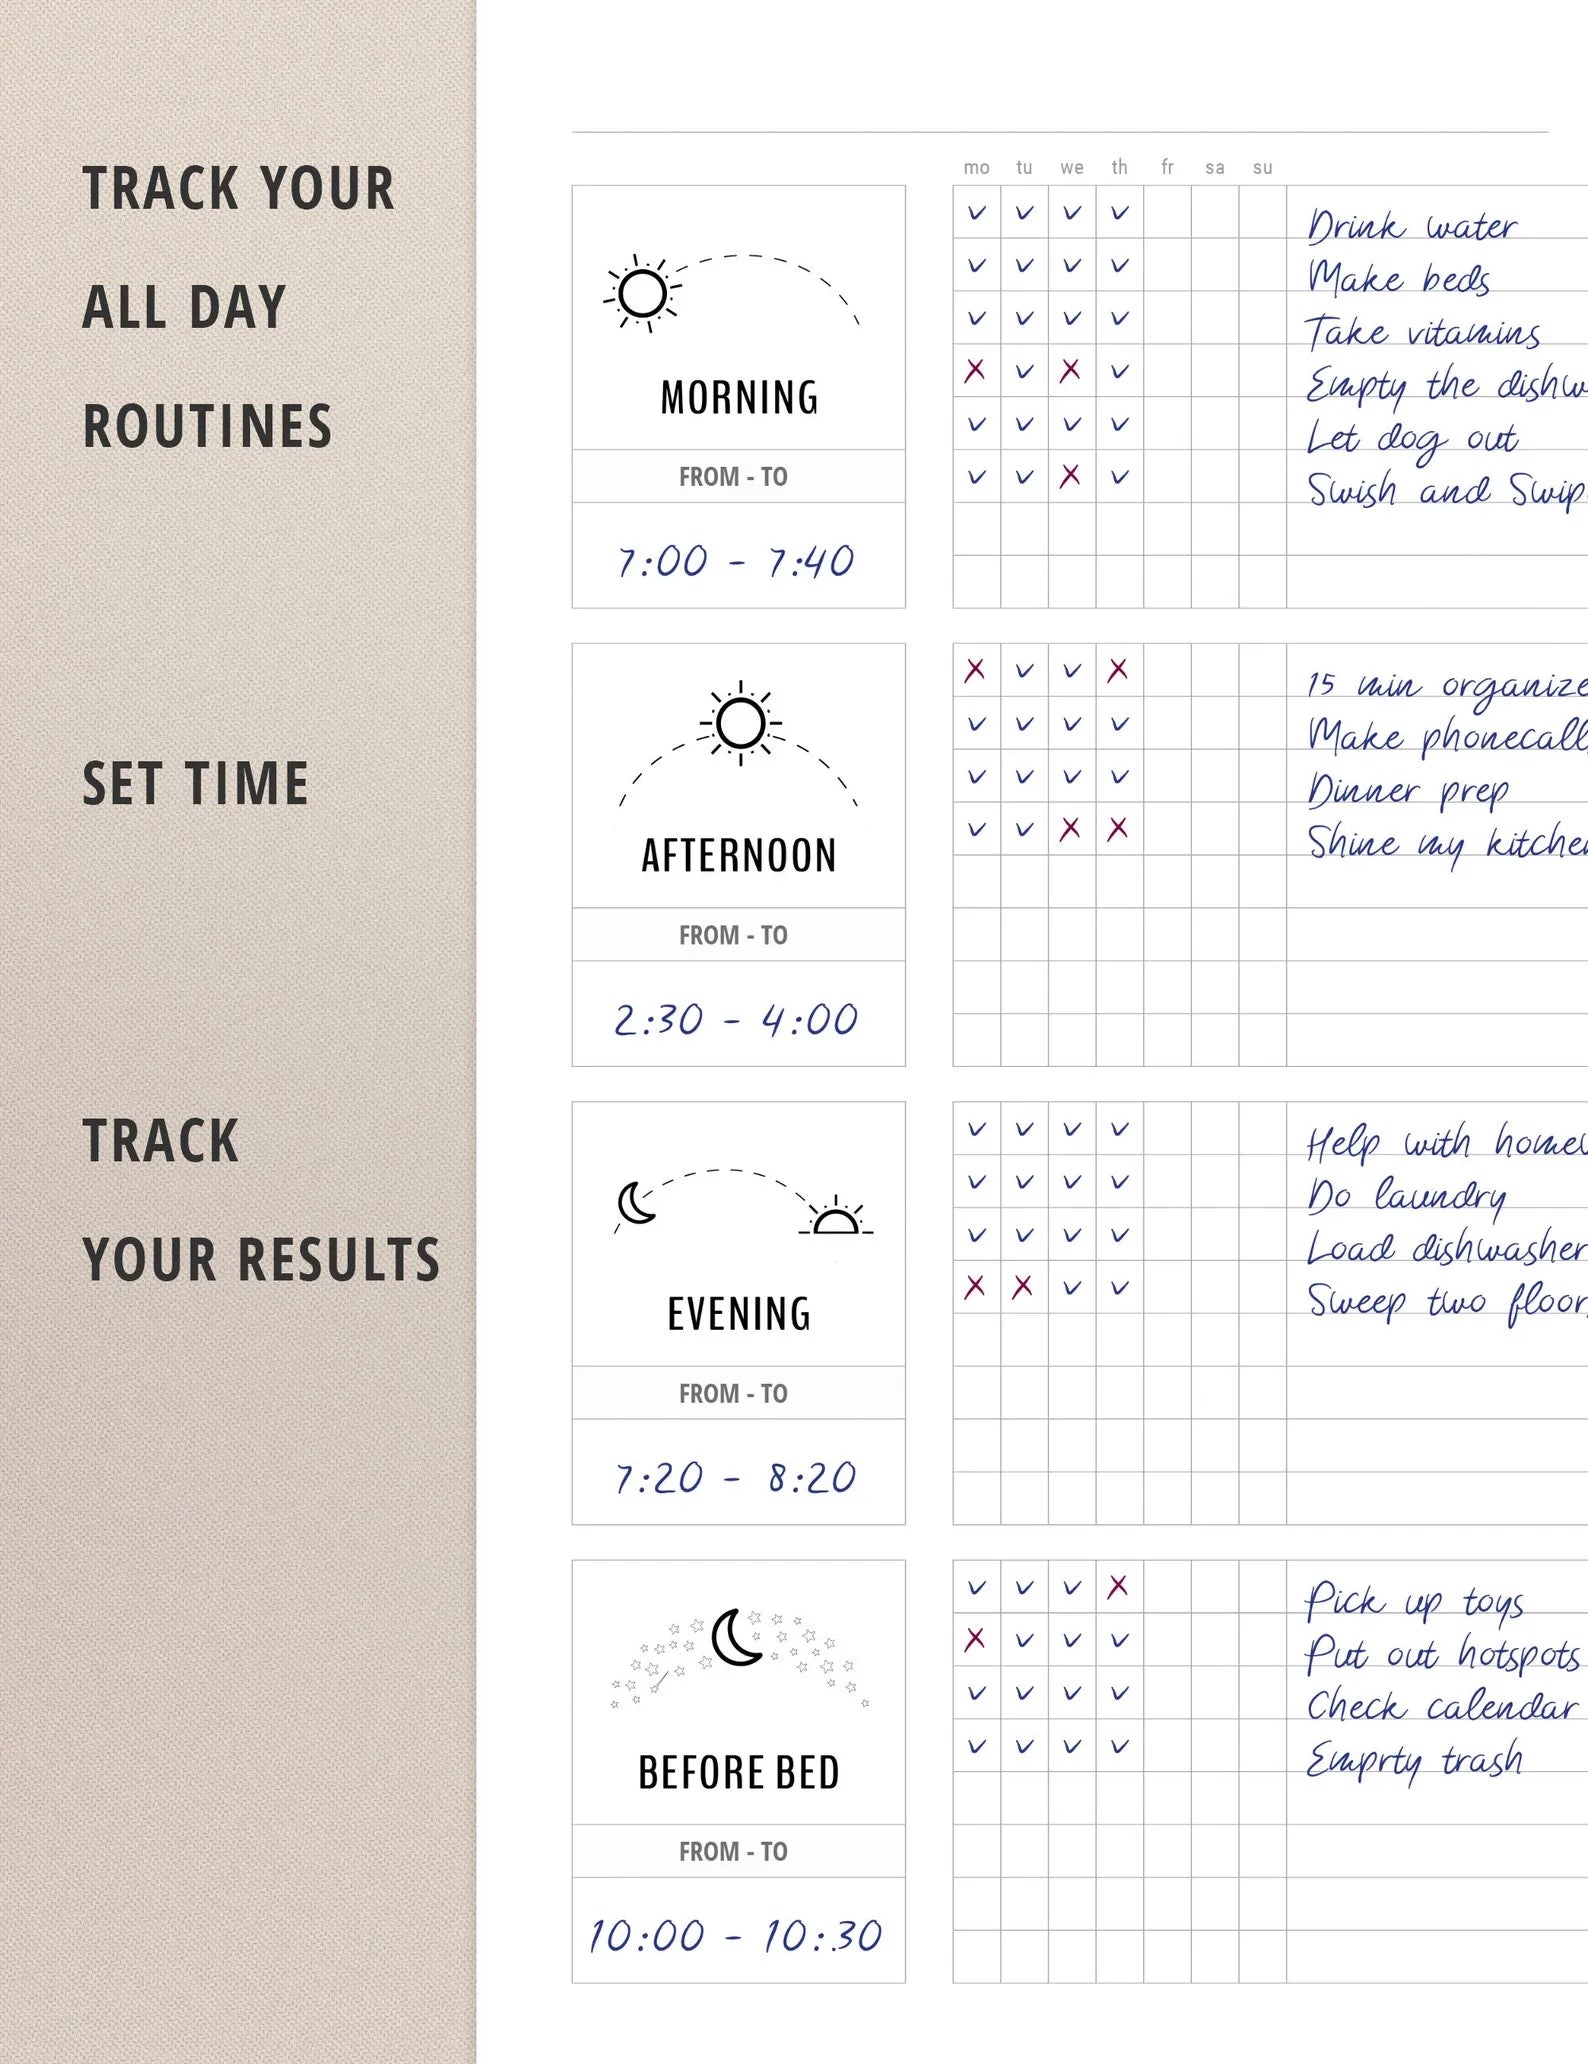 Daily routine checklist